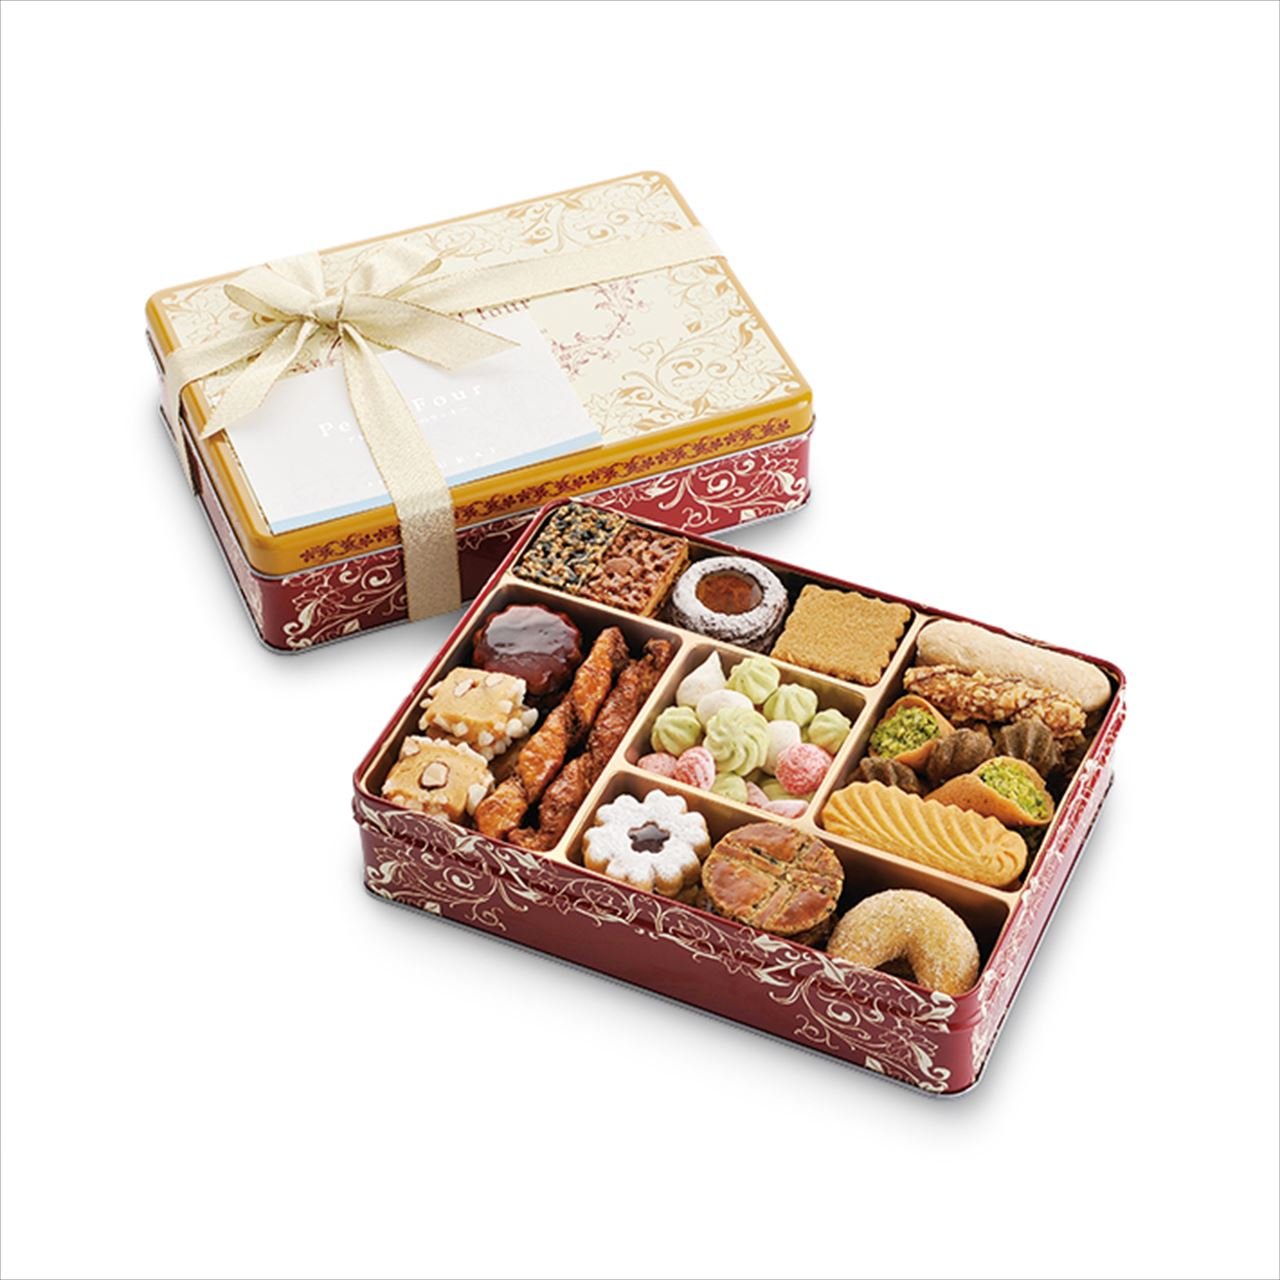 Печенье в коробке